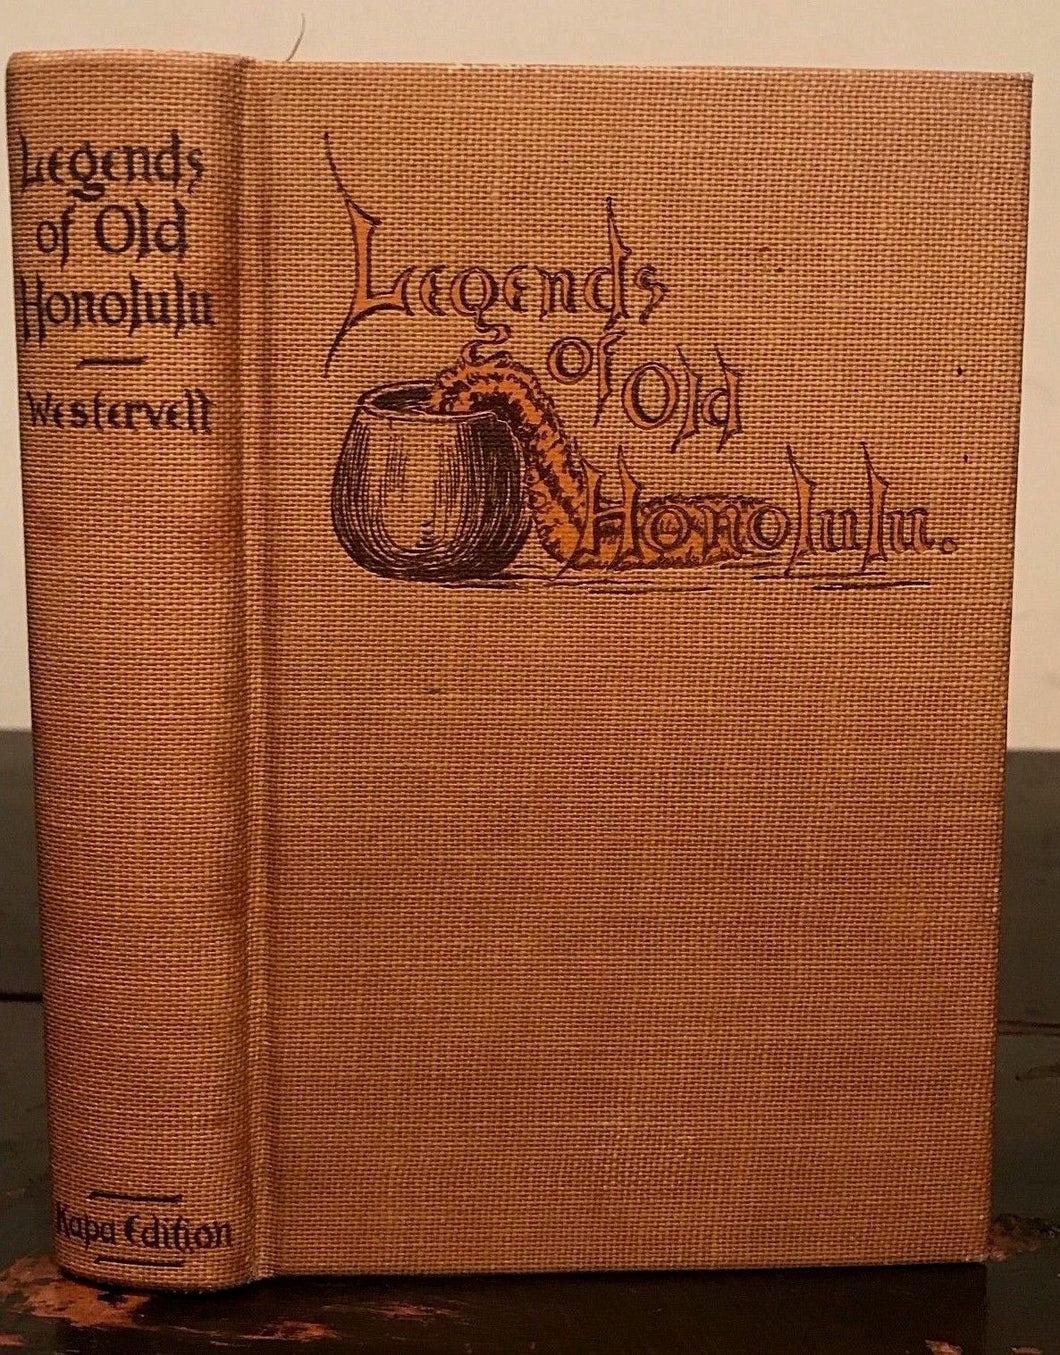 LEGENDS OF OLD HONOLULU - Westervelt, 1st Ed, 1915 - SCARCE HAWAII FOLKLORE MYTH